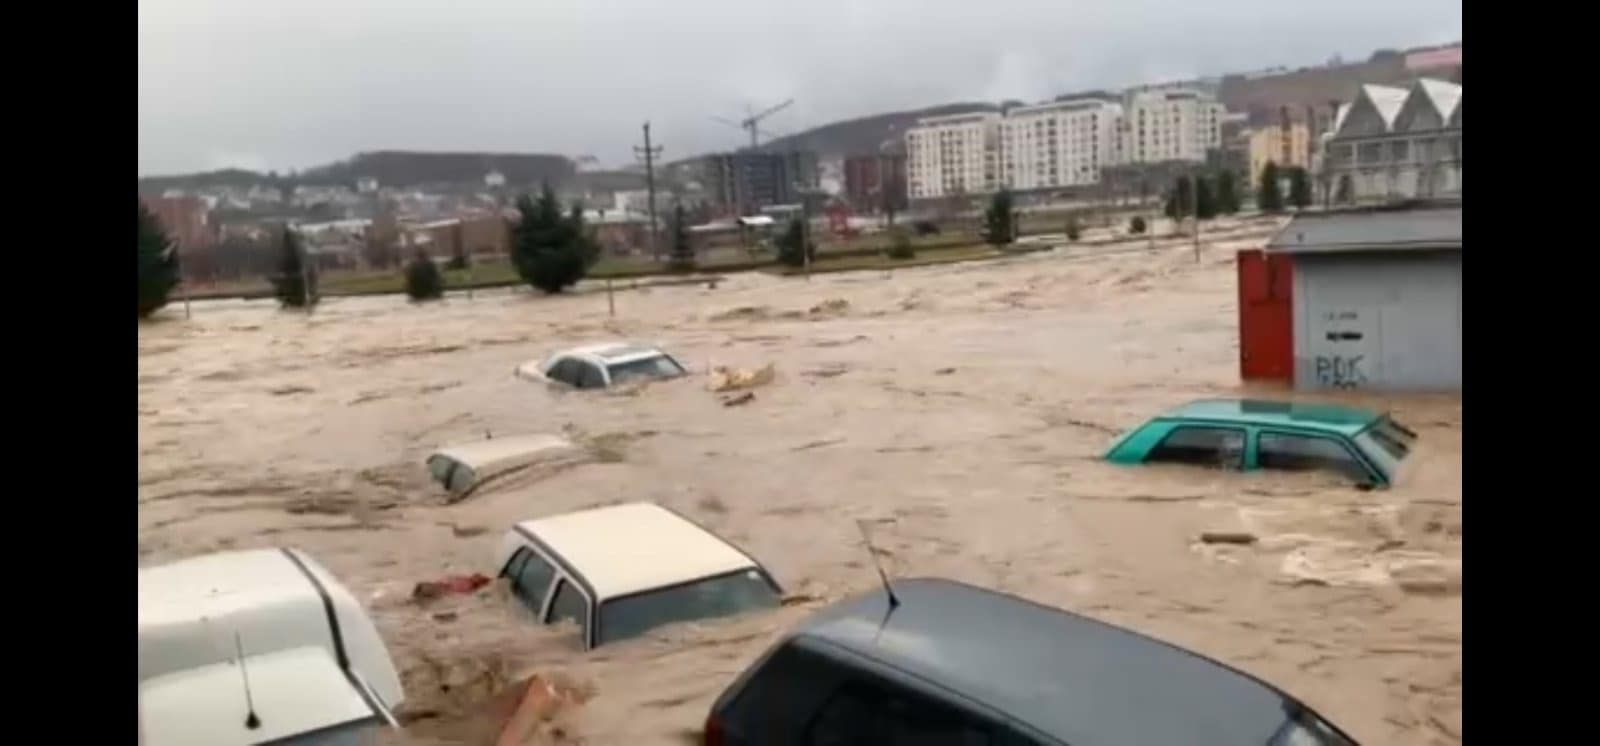 Hapet fondi për donacione pas vërshimeve në Skenderaj